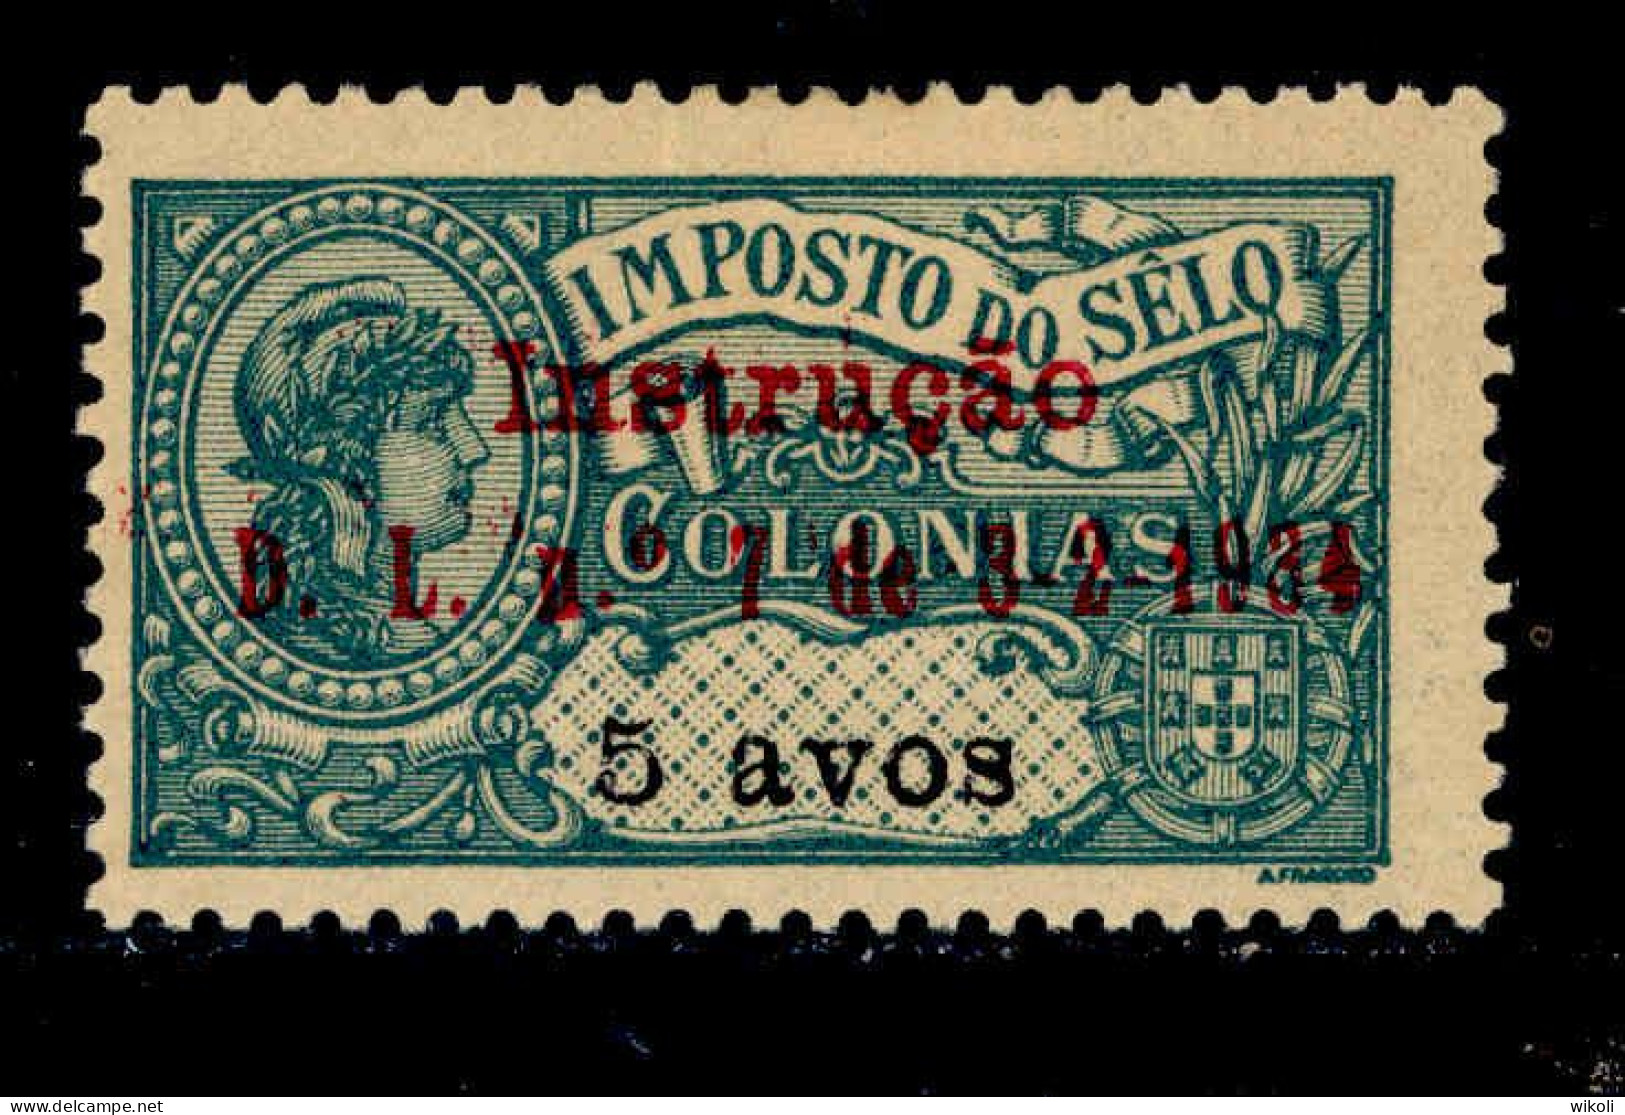 ! ! Timor - 1934 Postal Tax 5 A - Af. IP07 - MH - Timor